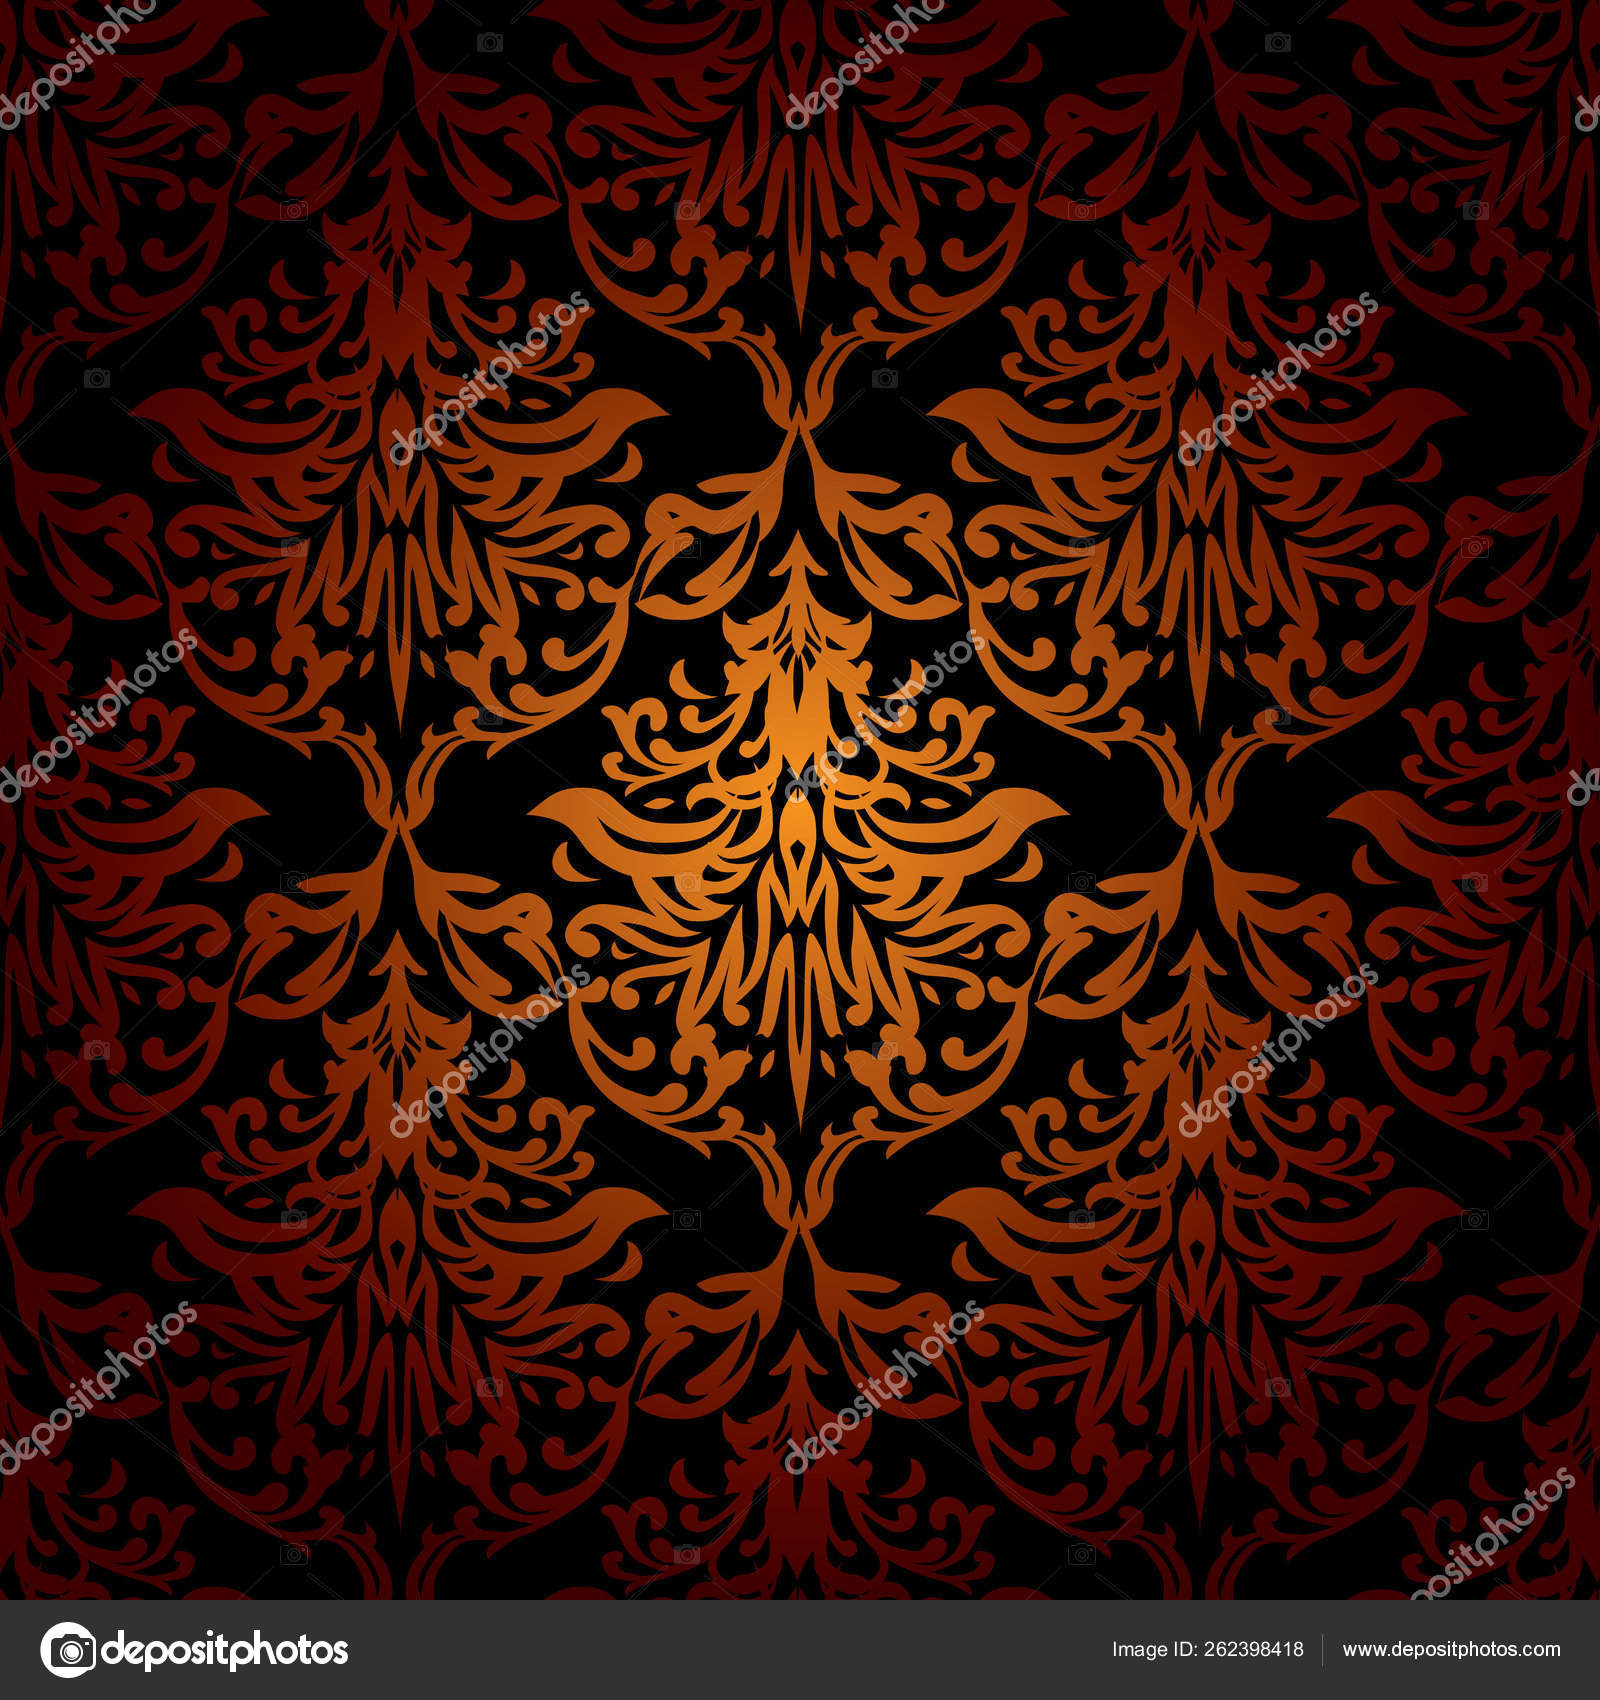 赤オレンジと黒シームレスな繰り返しの壁紙デザイン ストック写真 C Yayimages